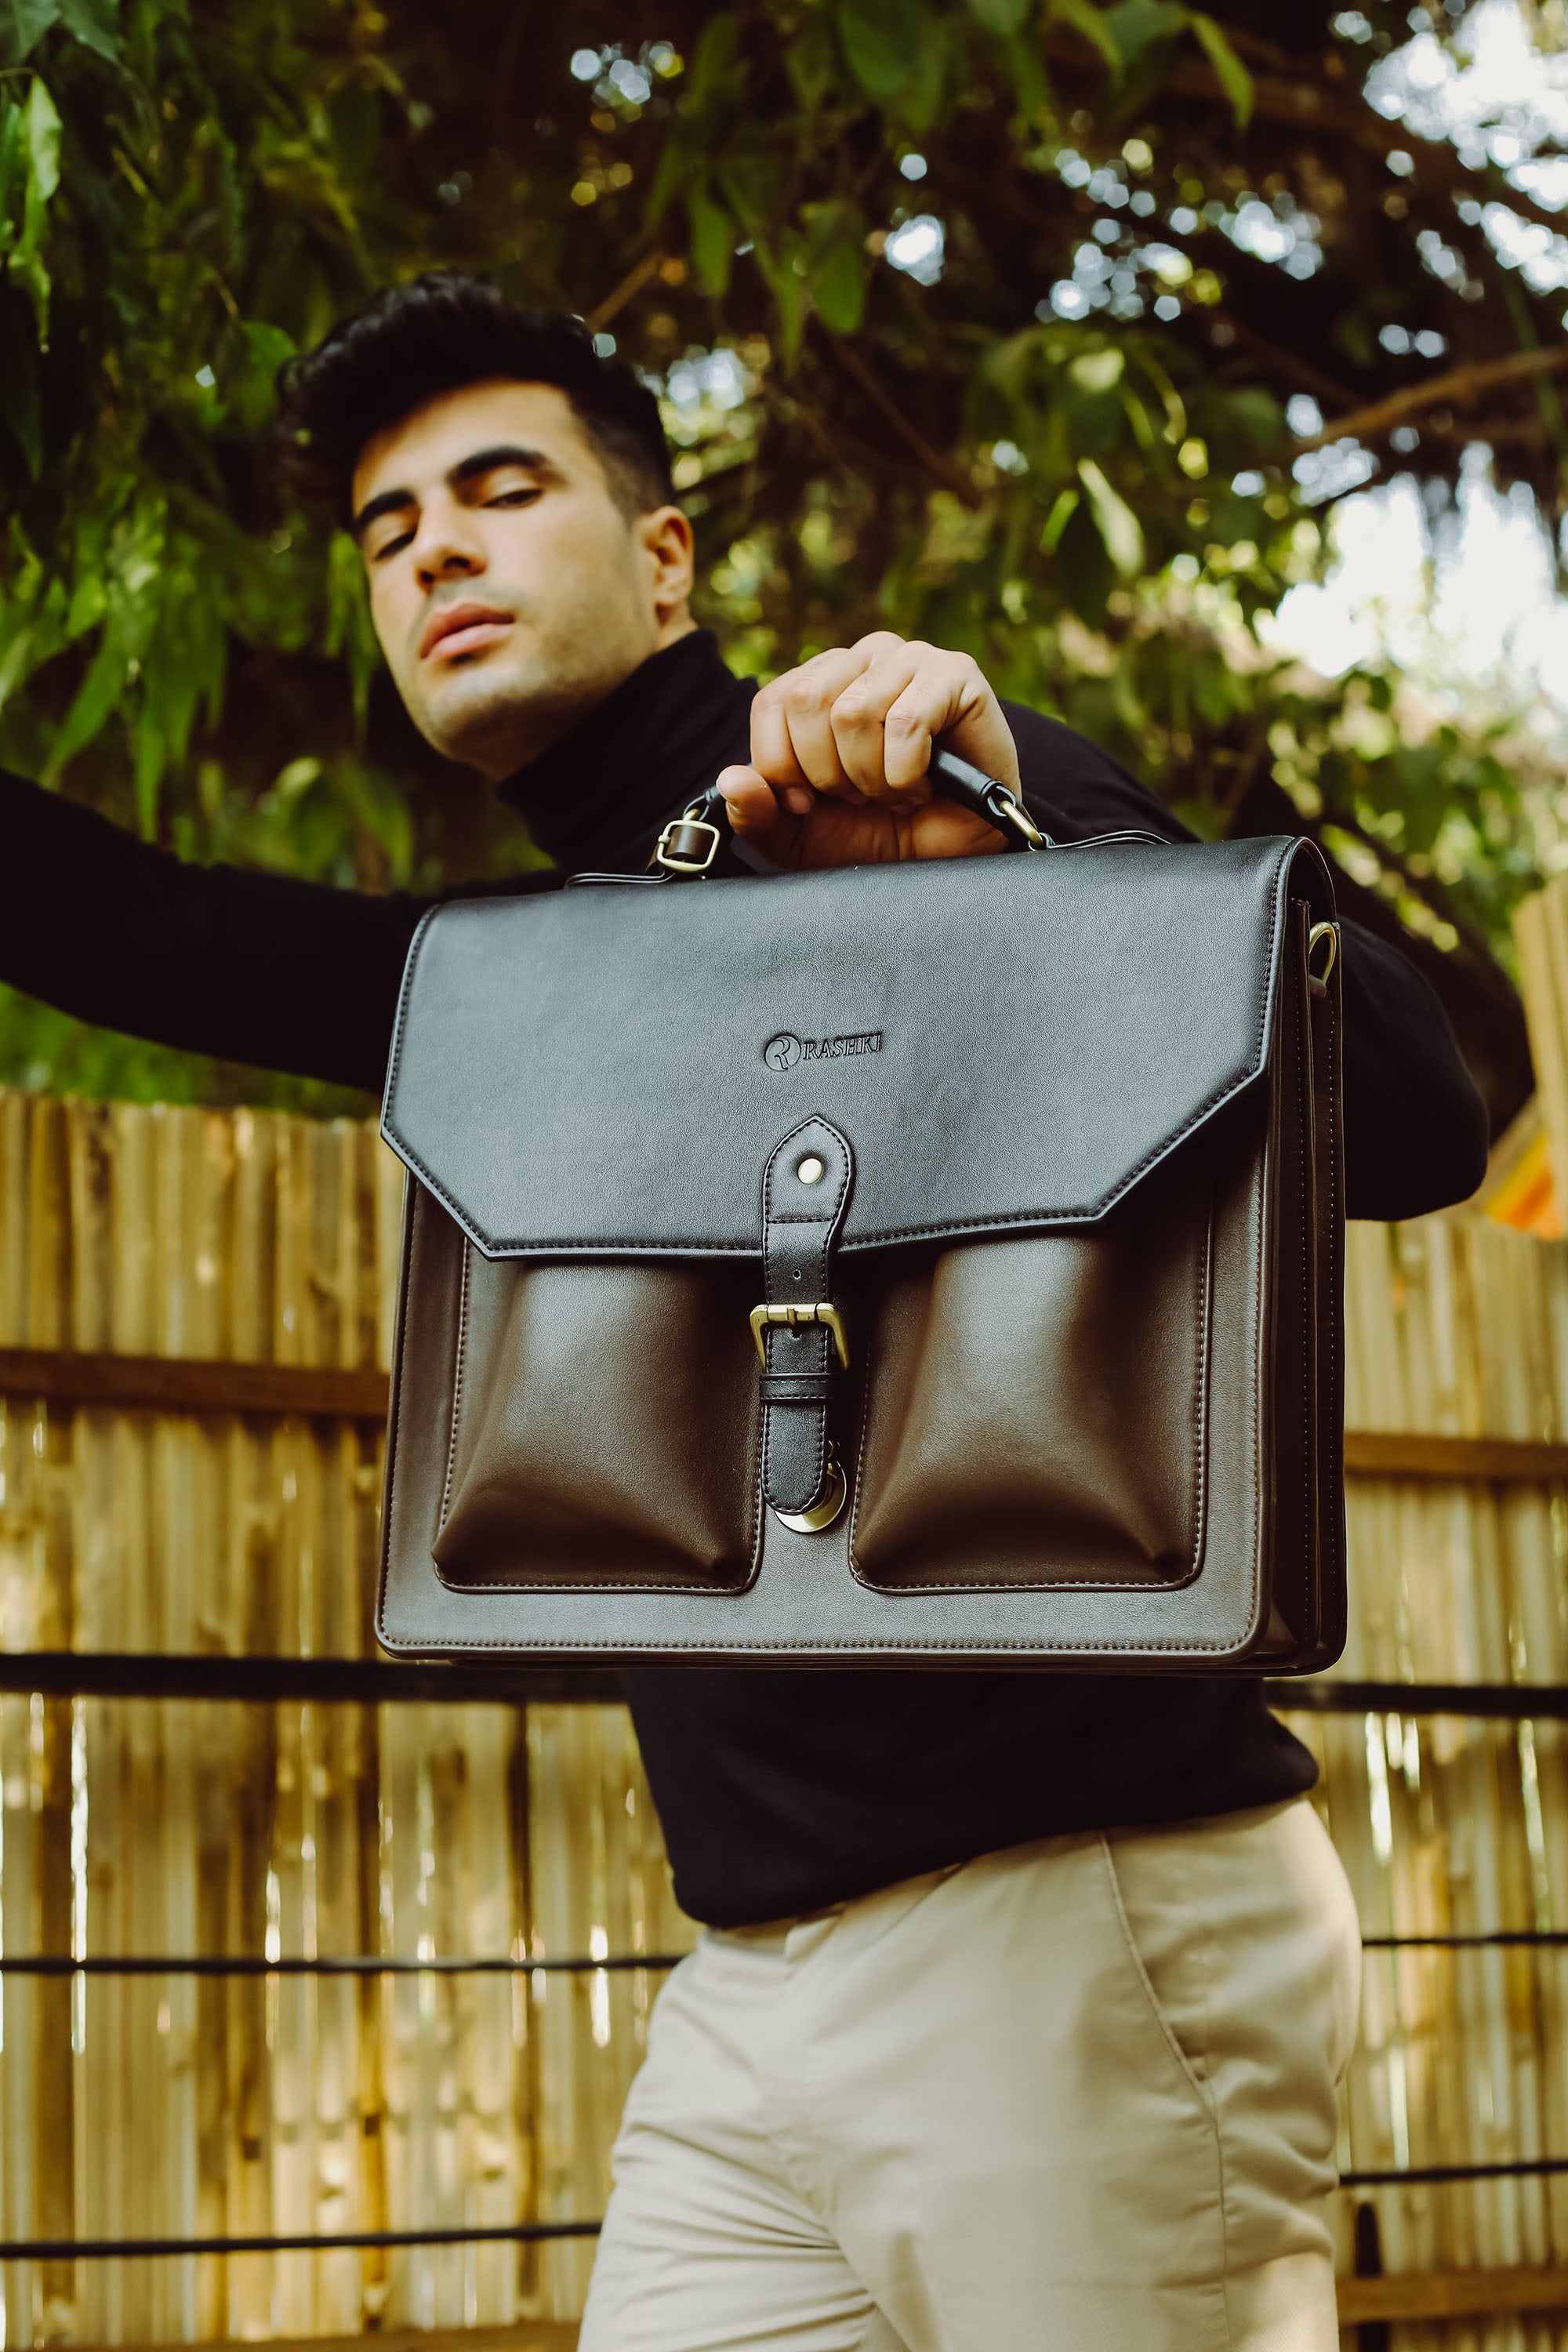 Tasca | Multipurpose leather bag | leather side bag for men – Rashki